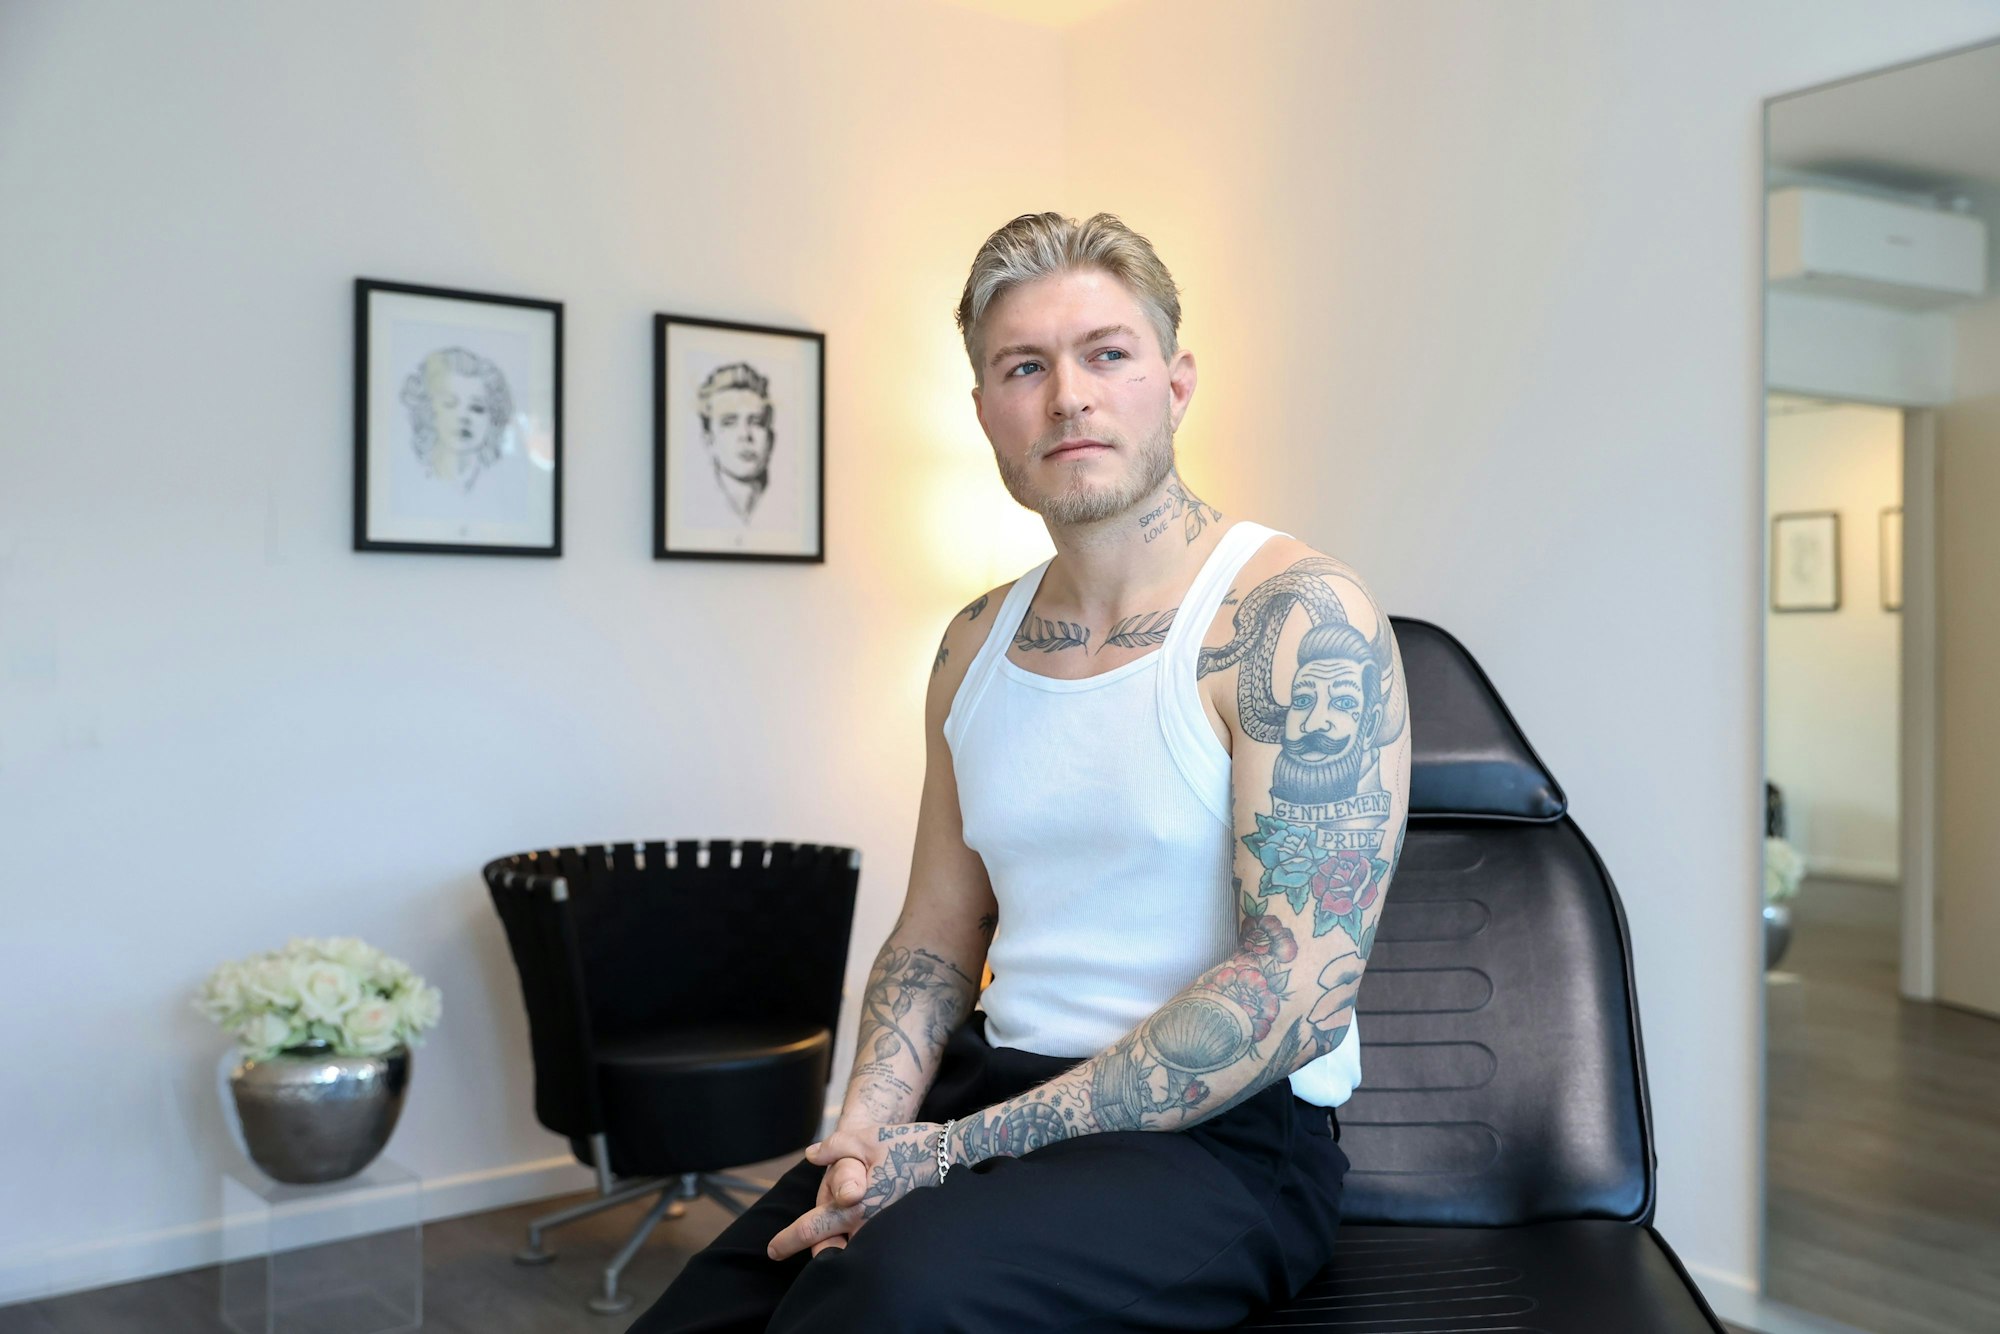 Das Bild zeigt Léon Sebastian Tiesler in einem weißen Unterhemd. Seine zahlreichen Tattoos auf dem Arm, am Brustbein, am Hals und im Gesicht sind gut zu erkennen.



